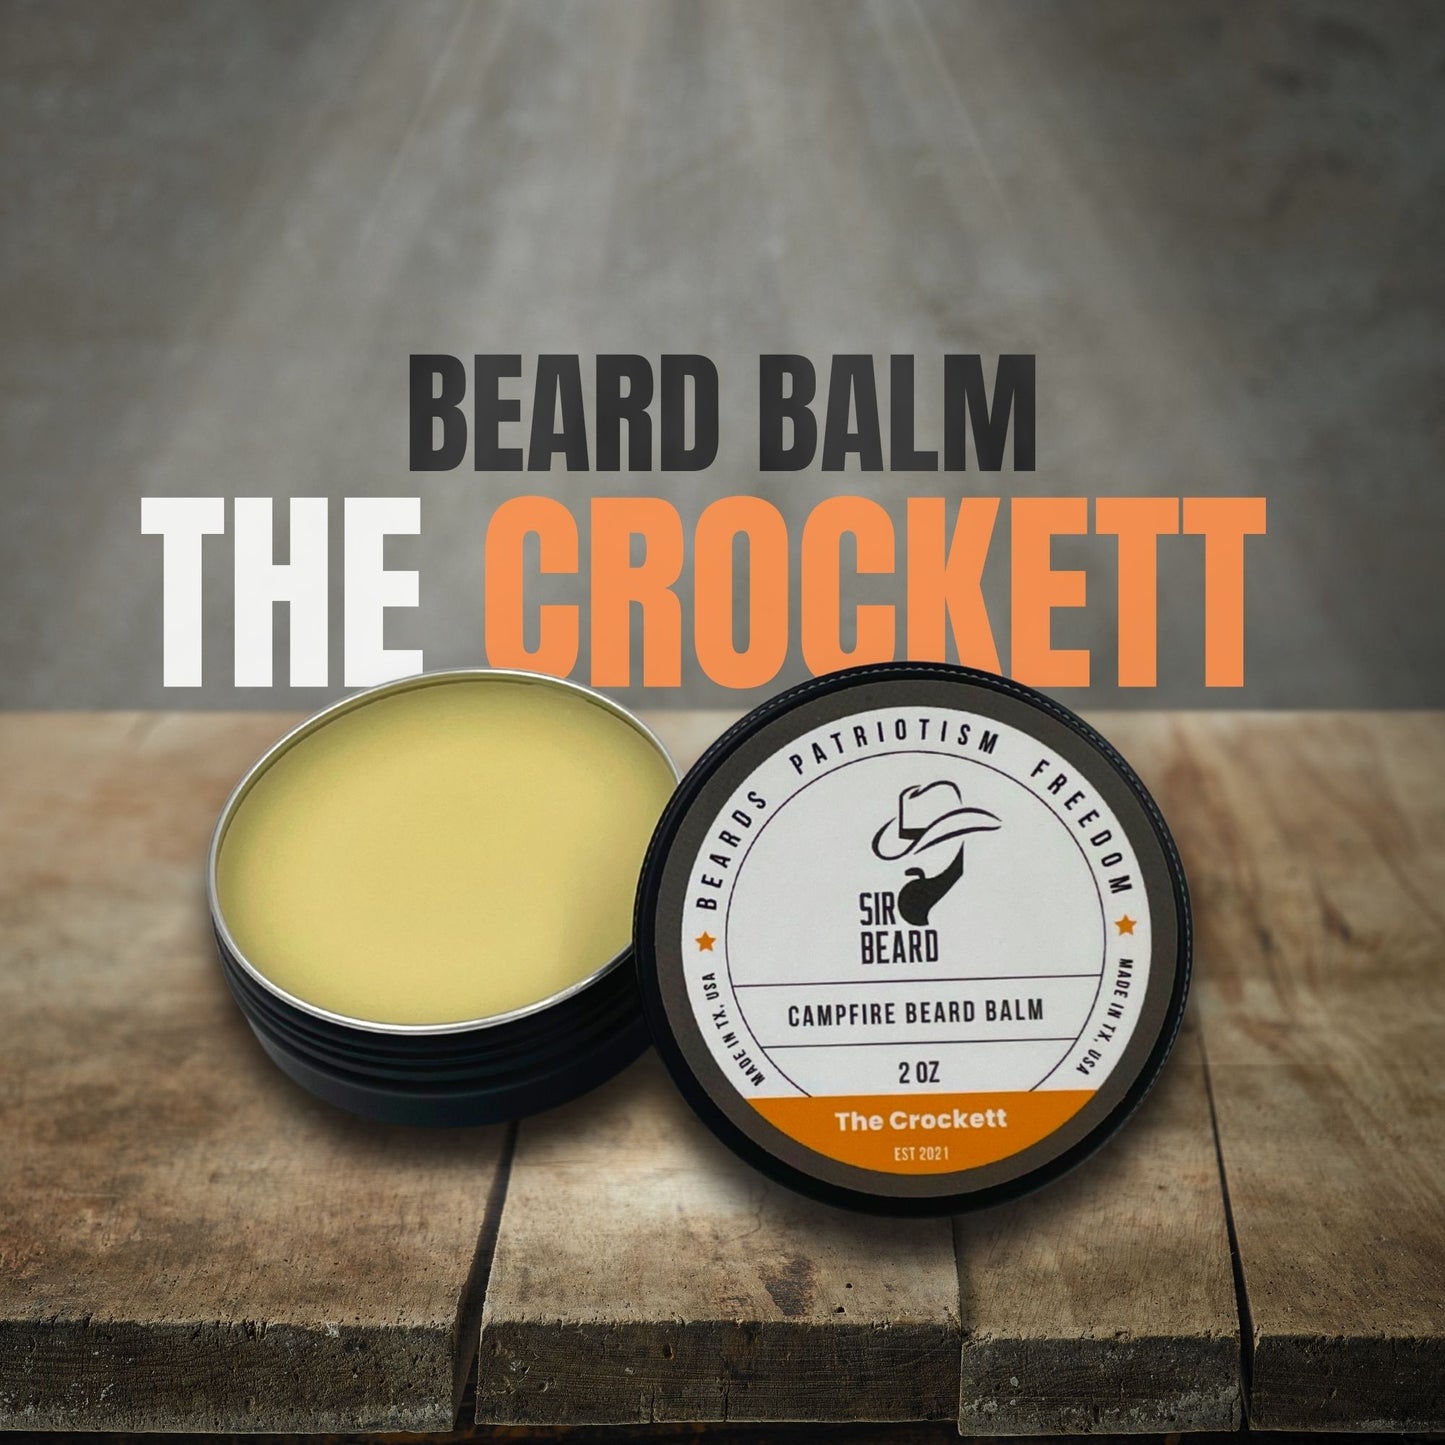 Sir Beard Texas Beard Balm open (The Crockett)